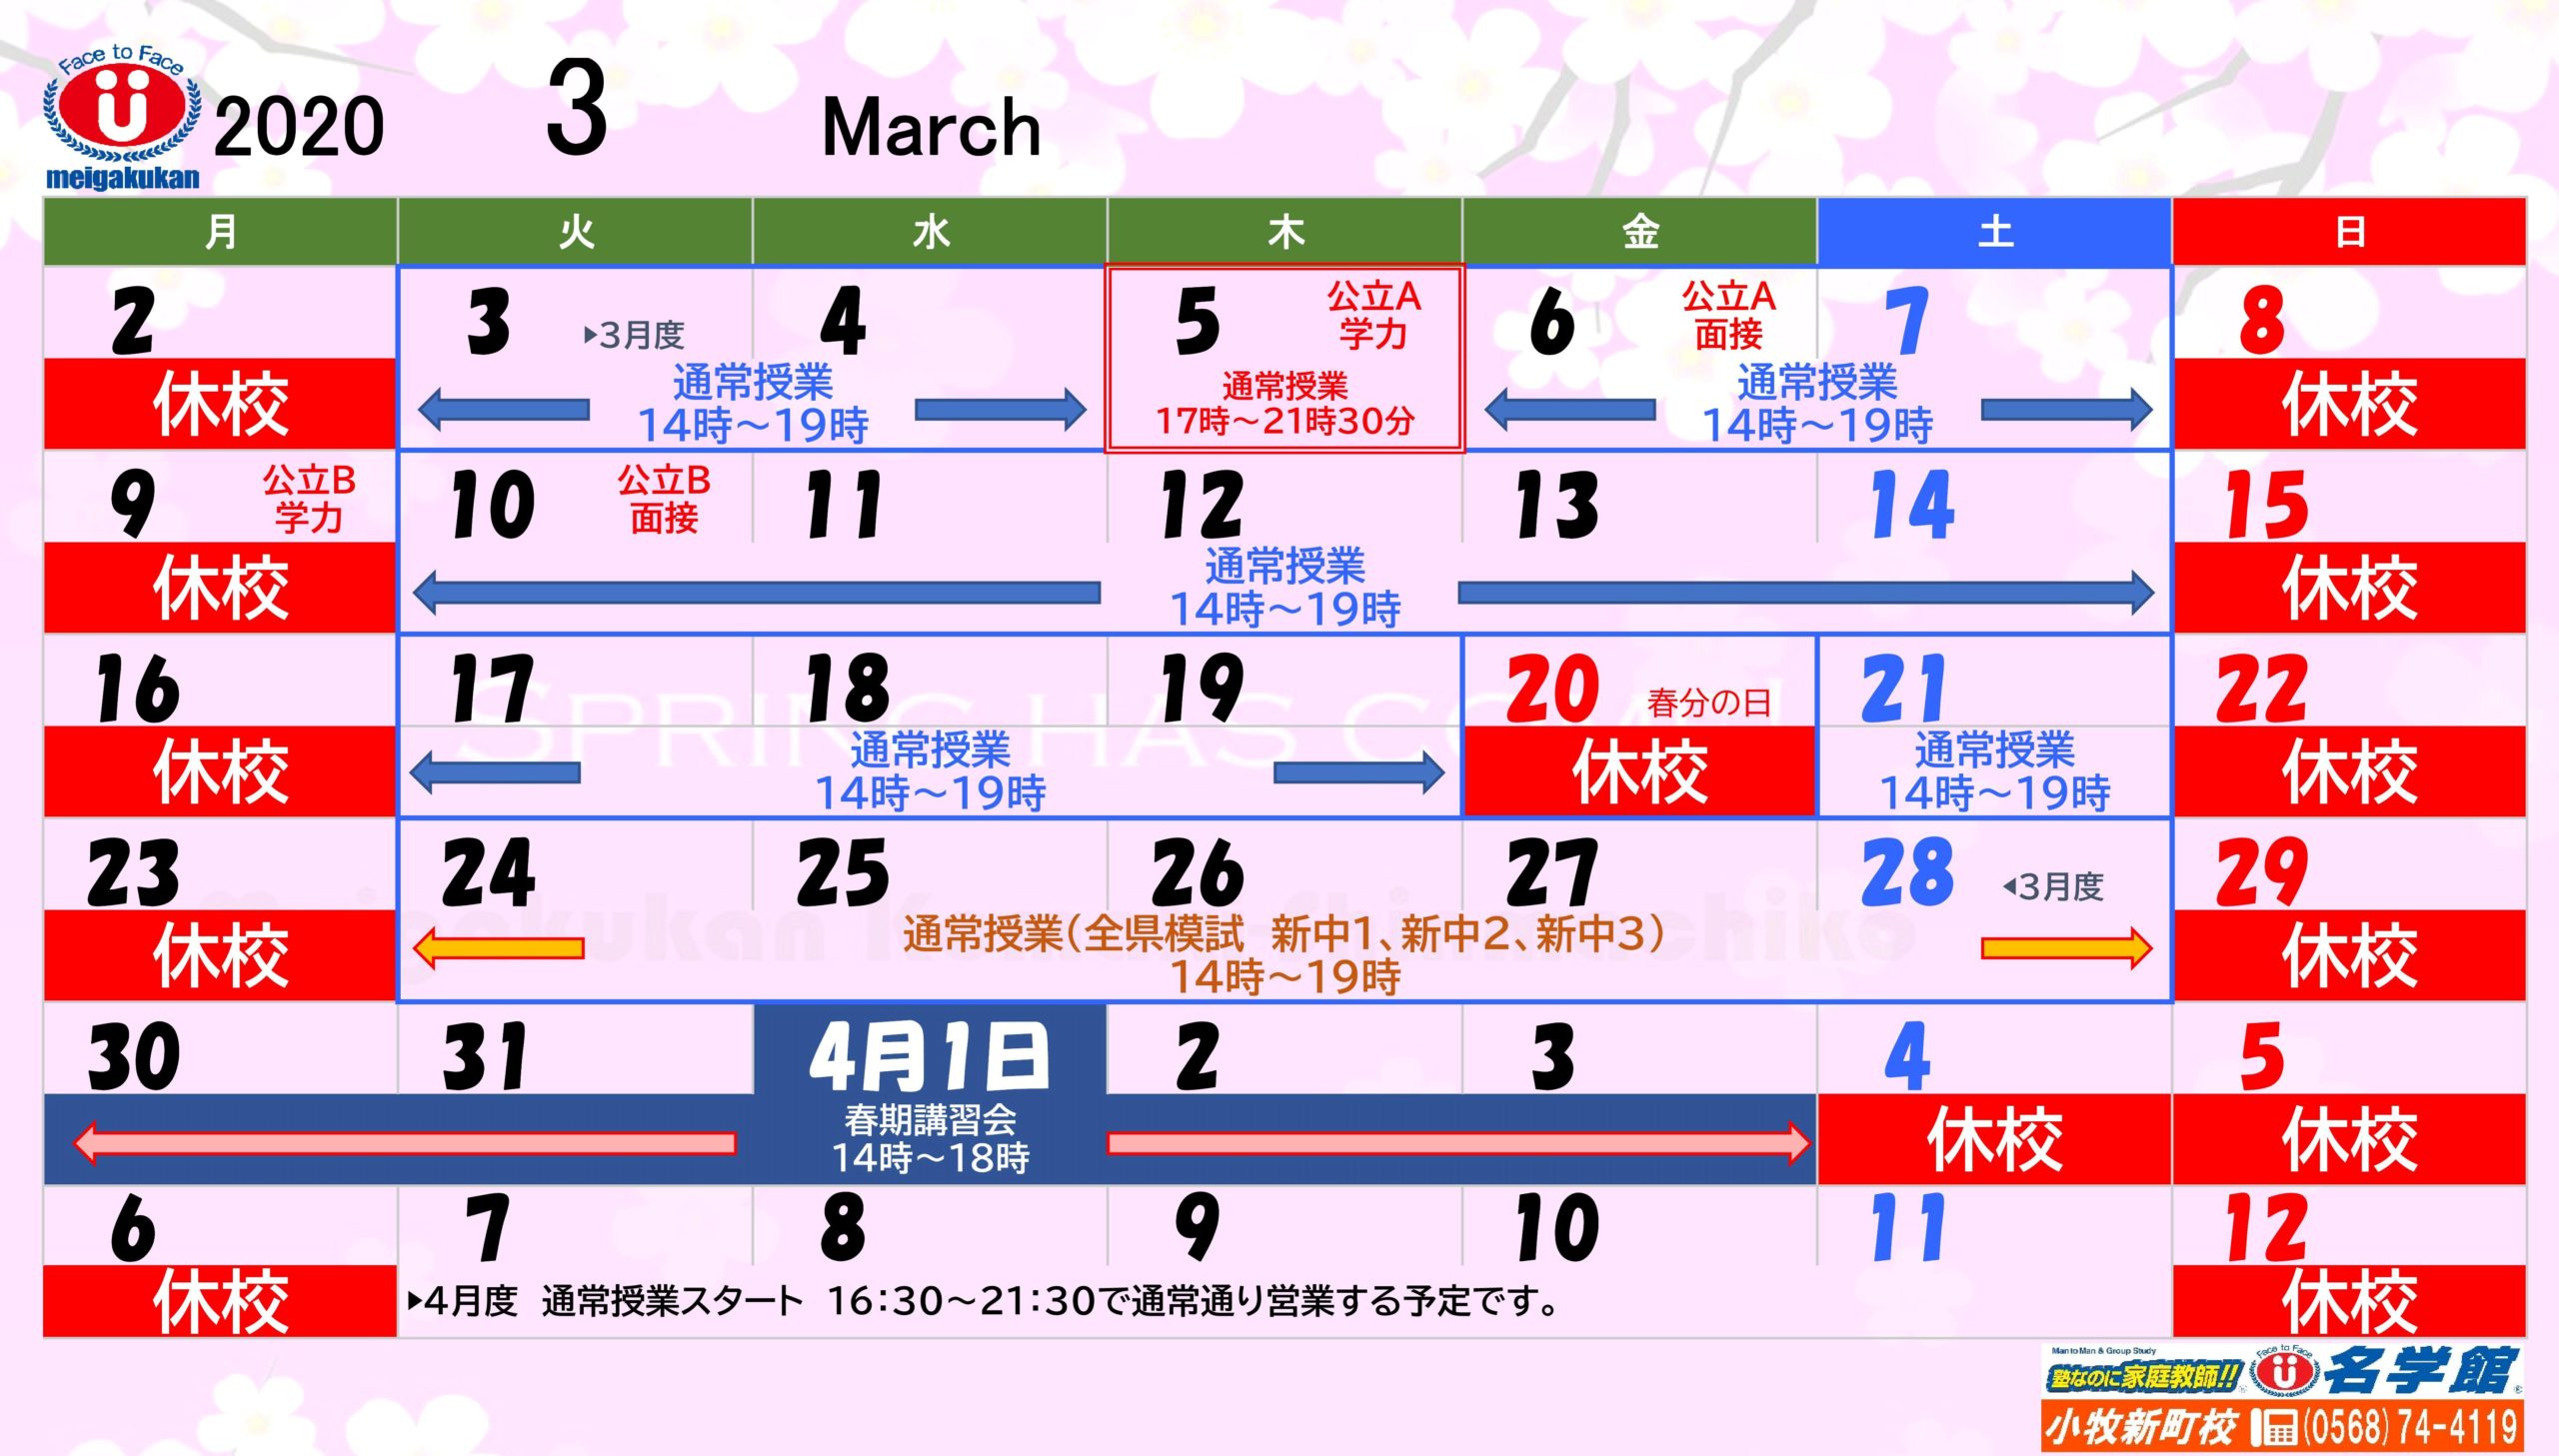 名学館カレンダー2020年3月